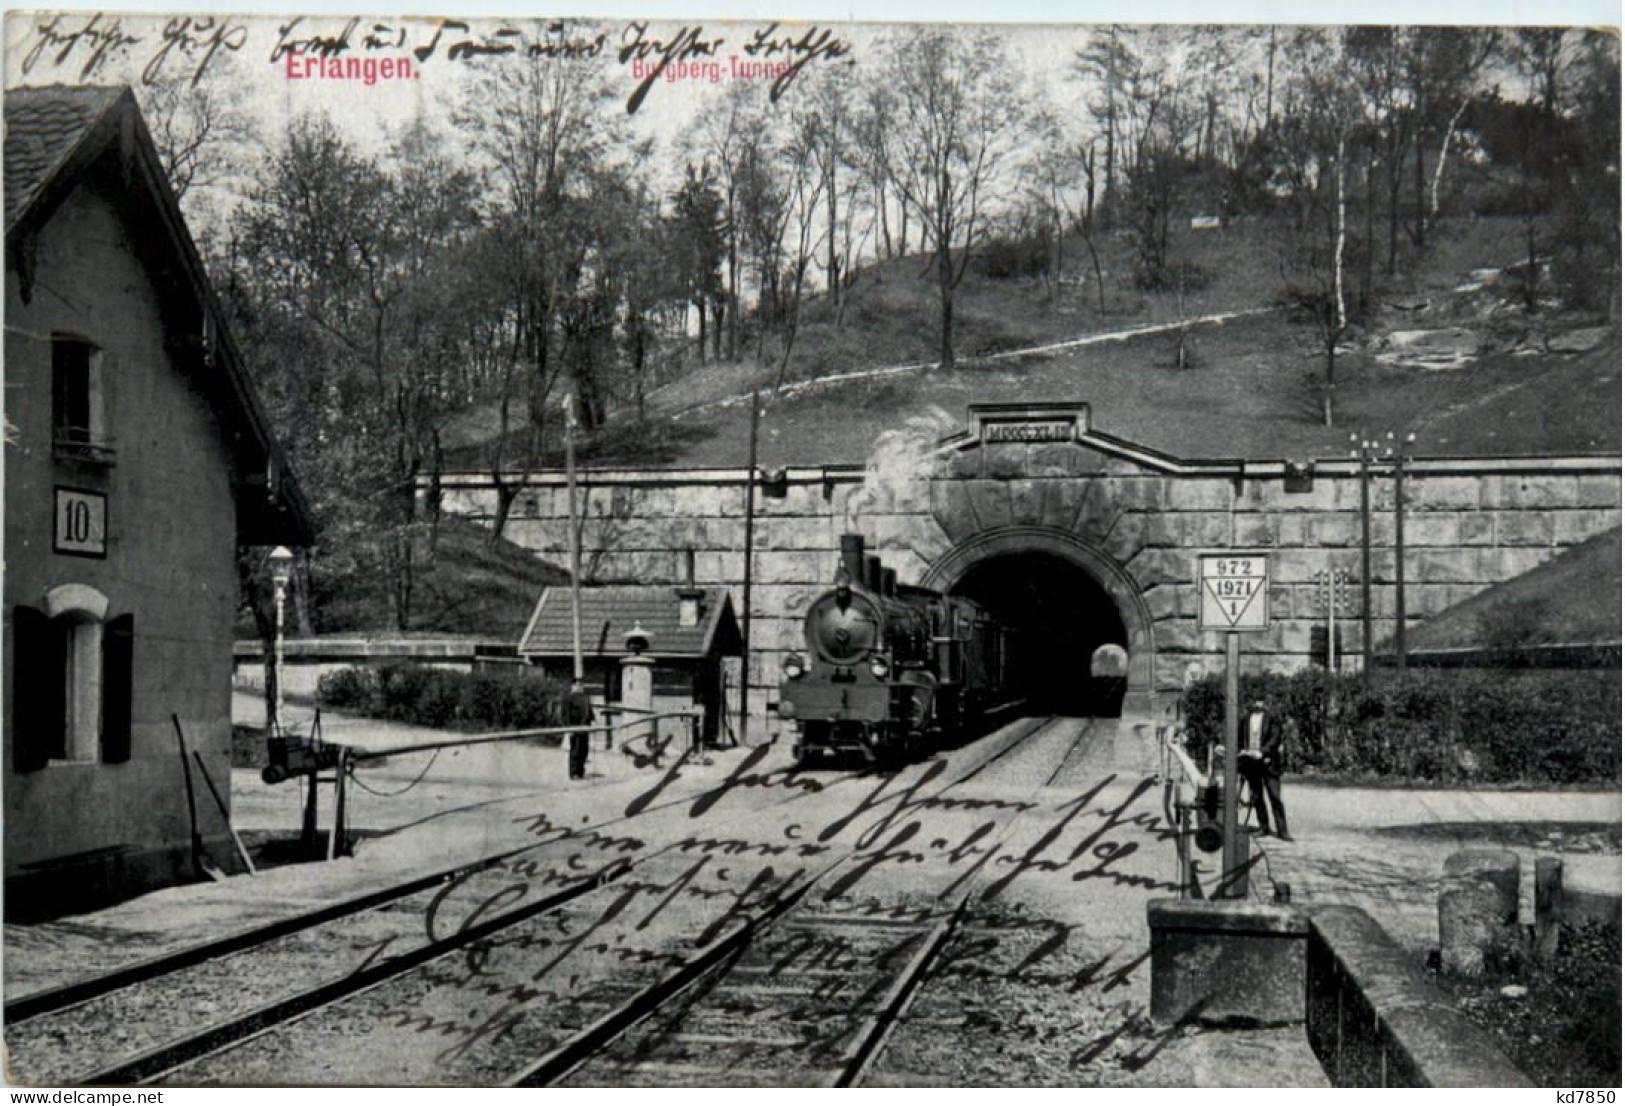 Erlangen - Burgberg Tunnel - Erlangen